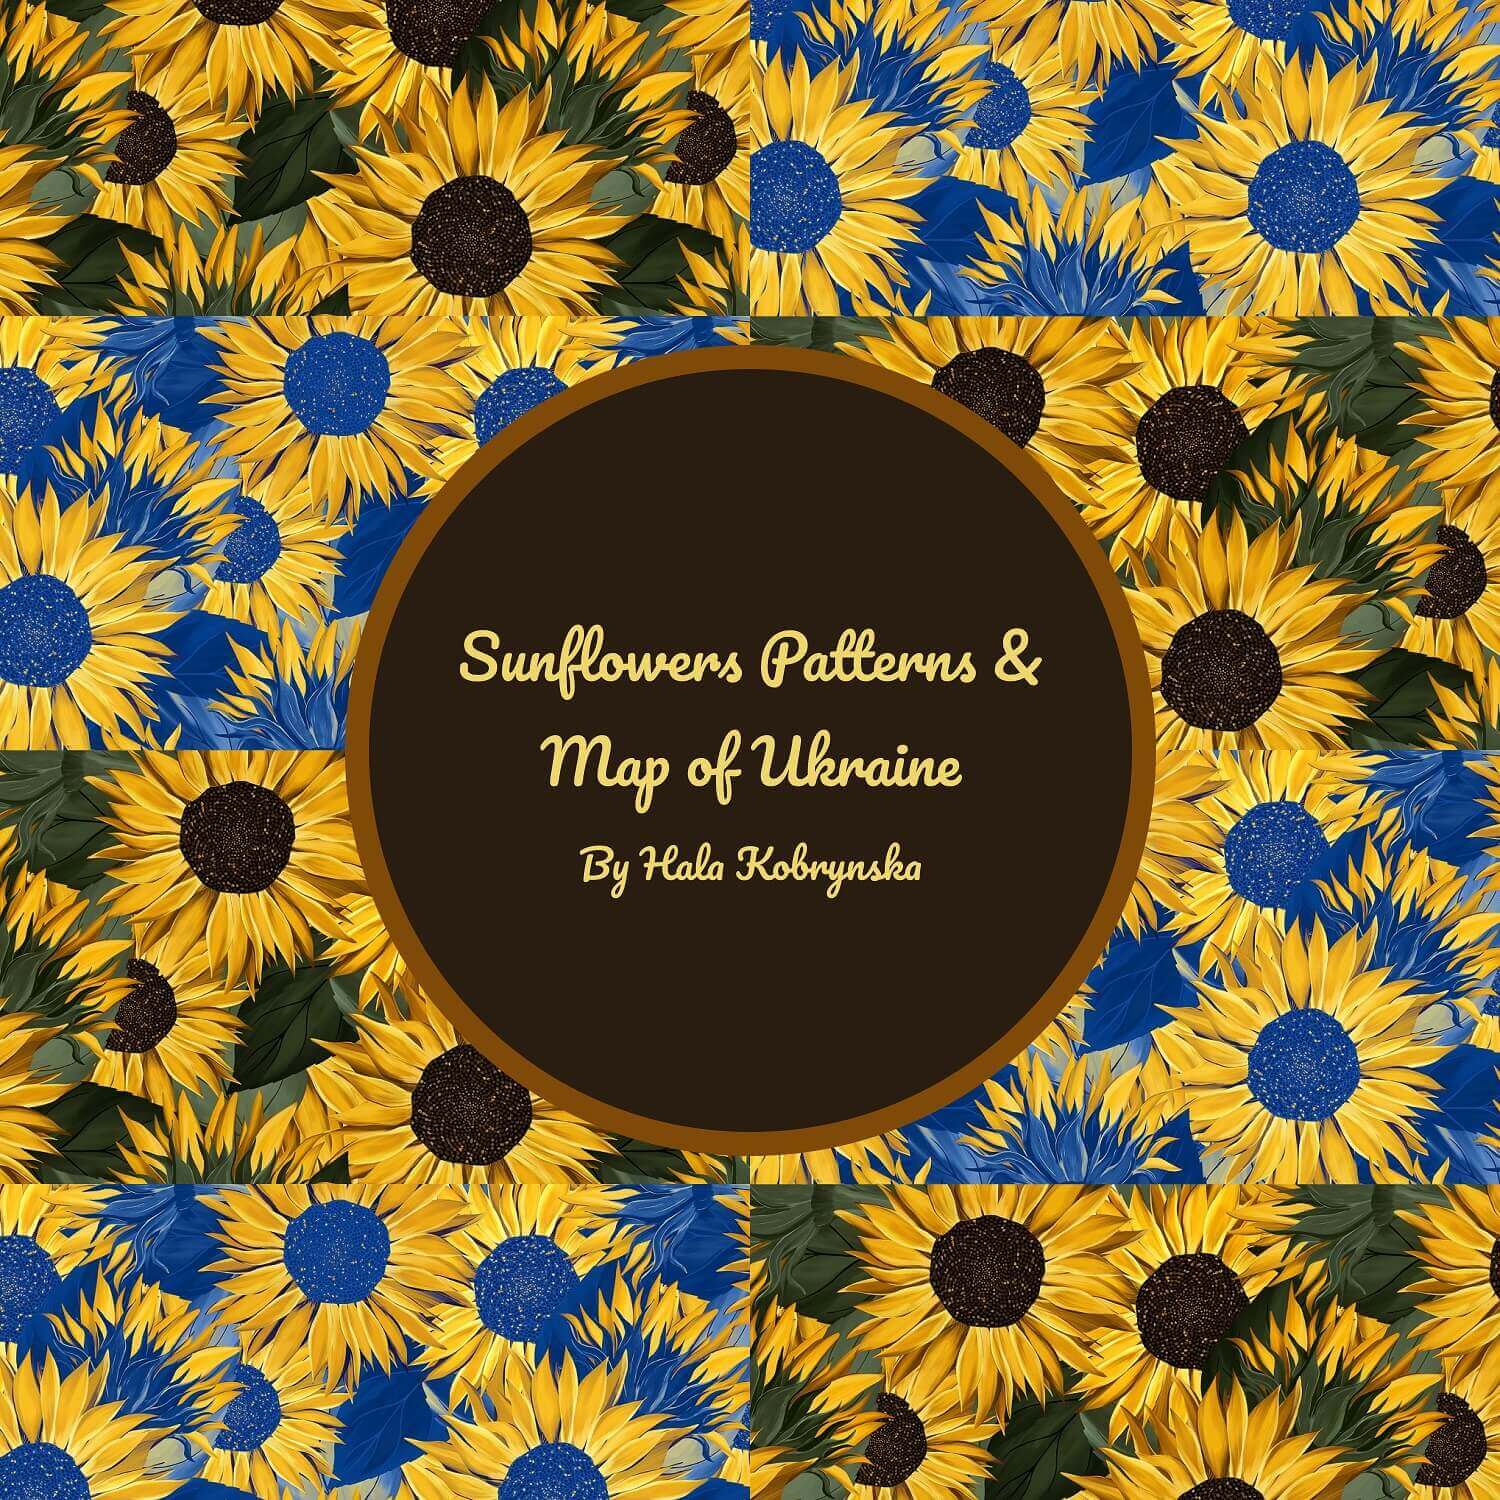 Sunflowers Patterns & Map of Ukraine.